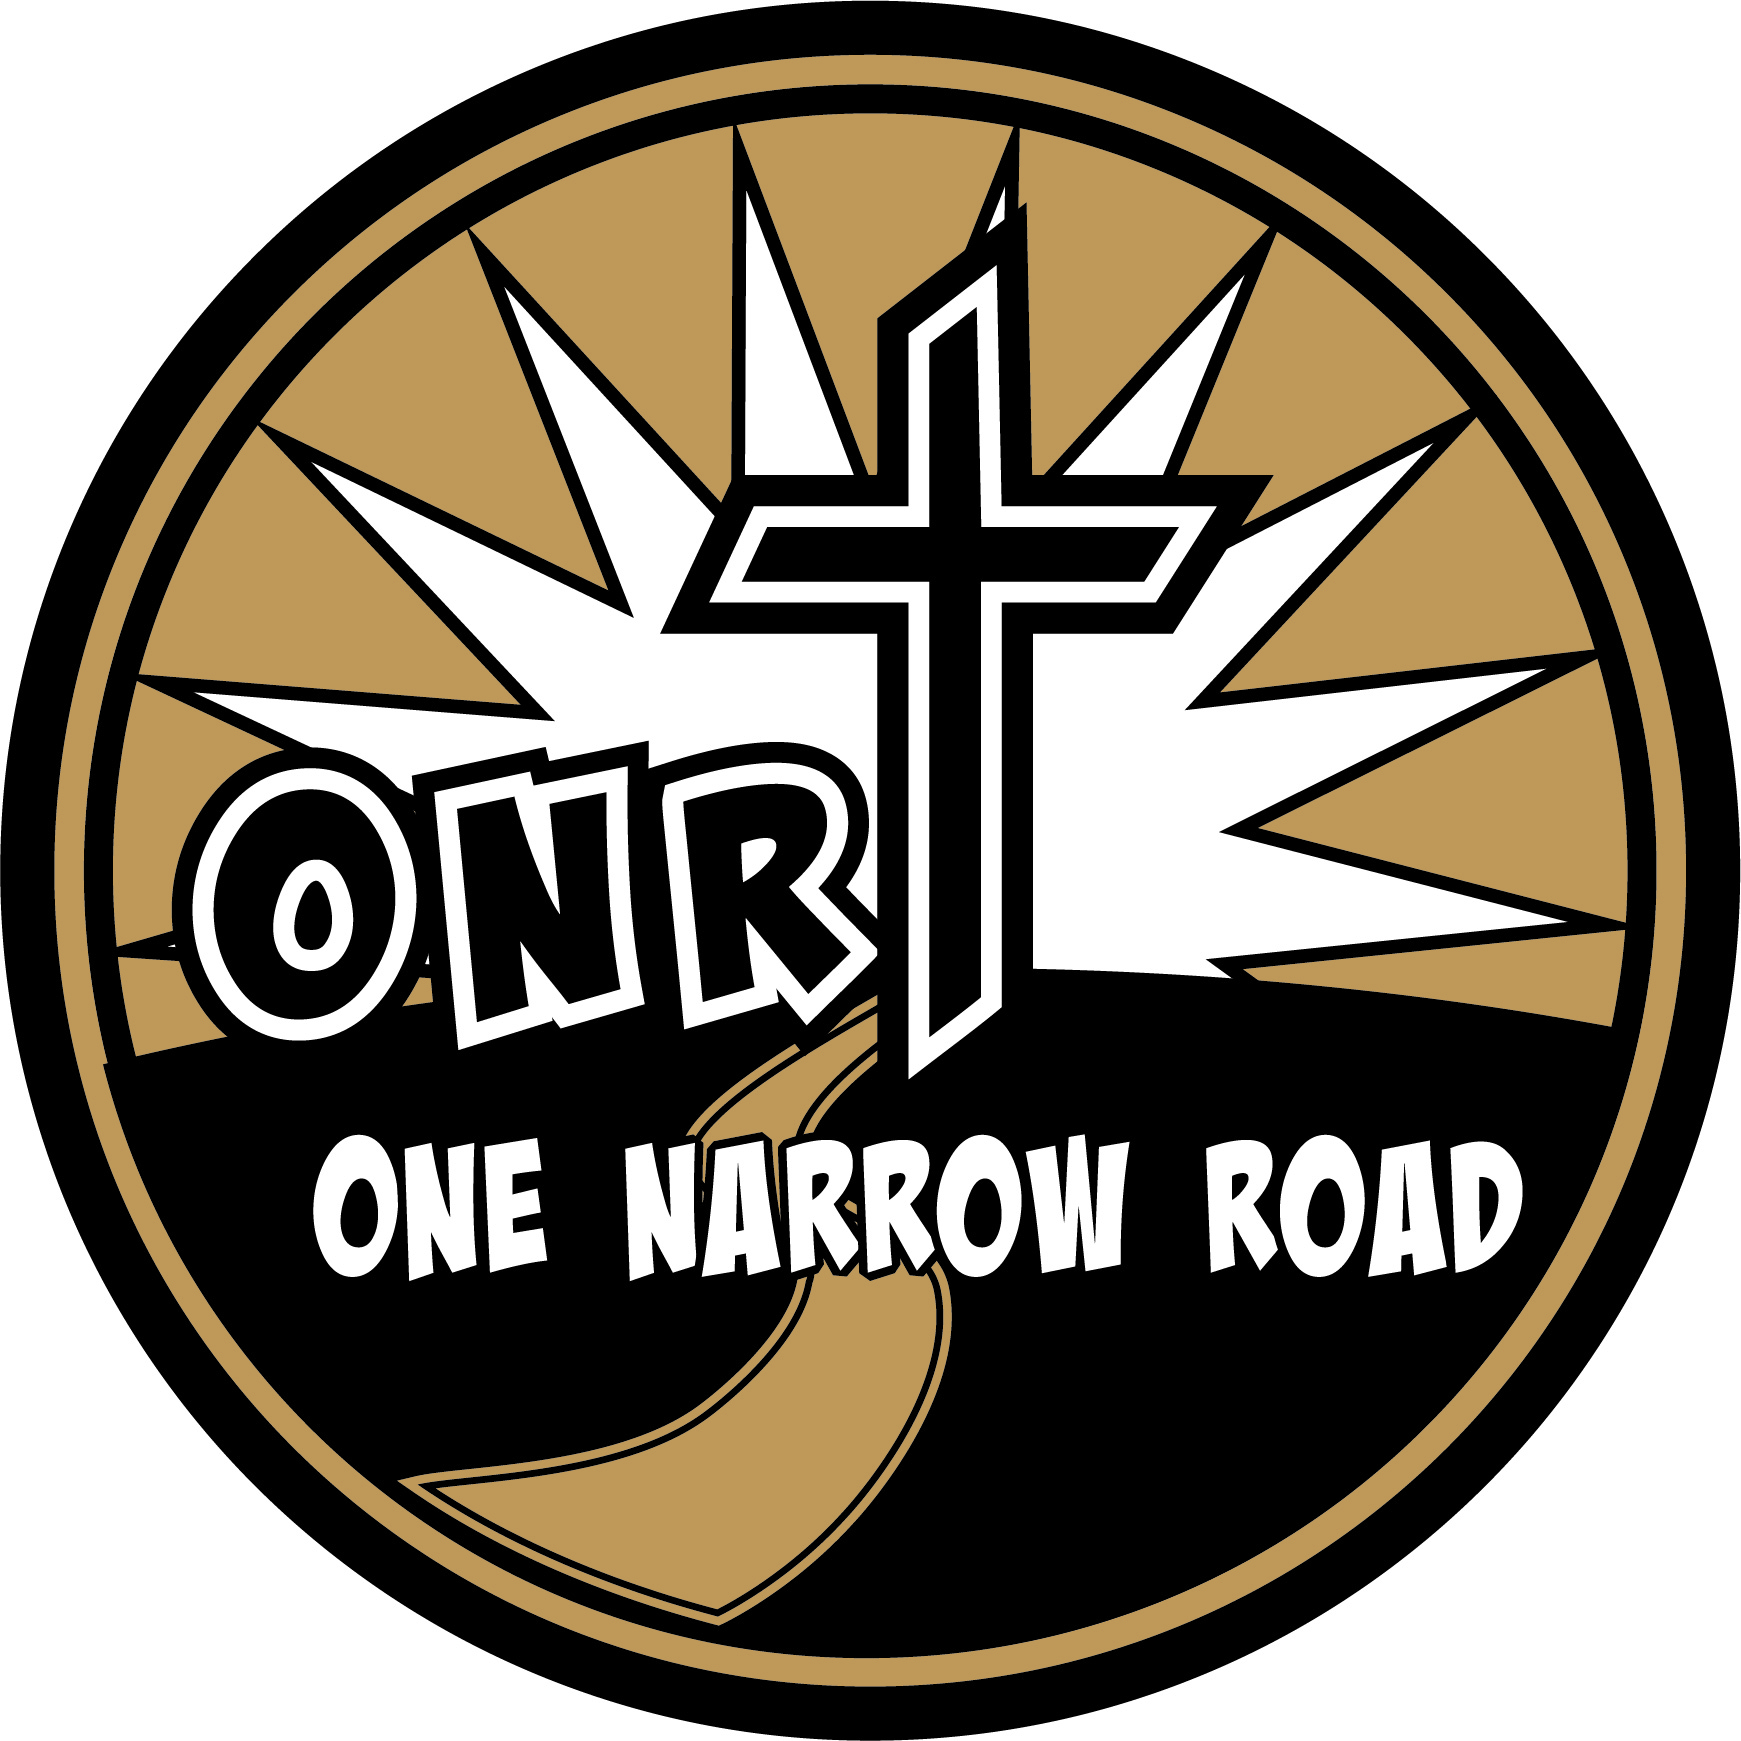 One Narrow Road